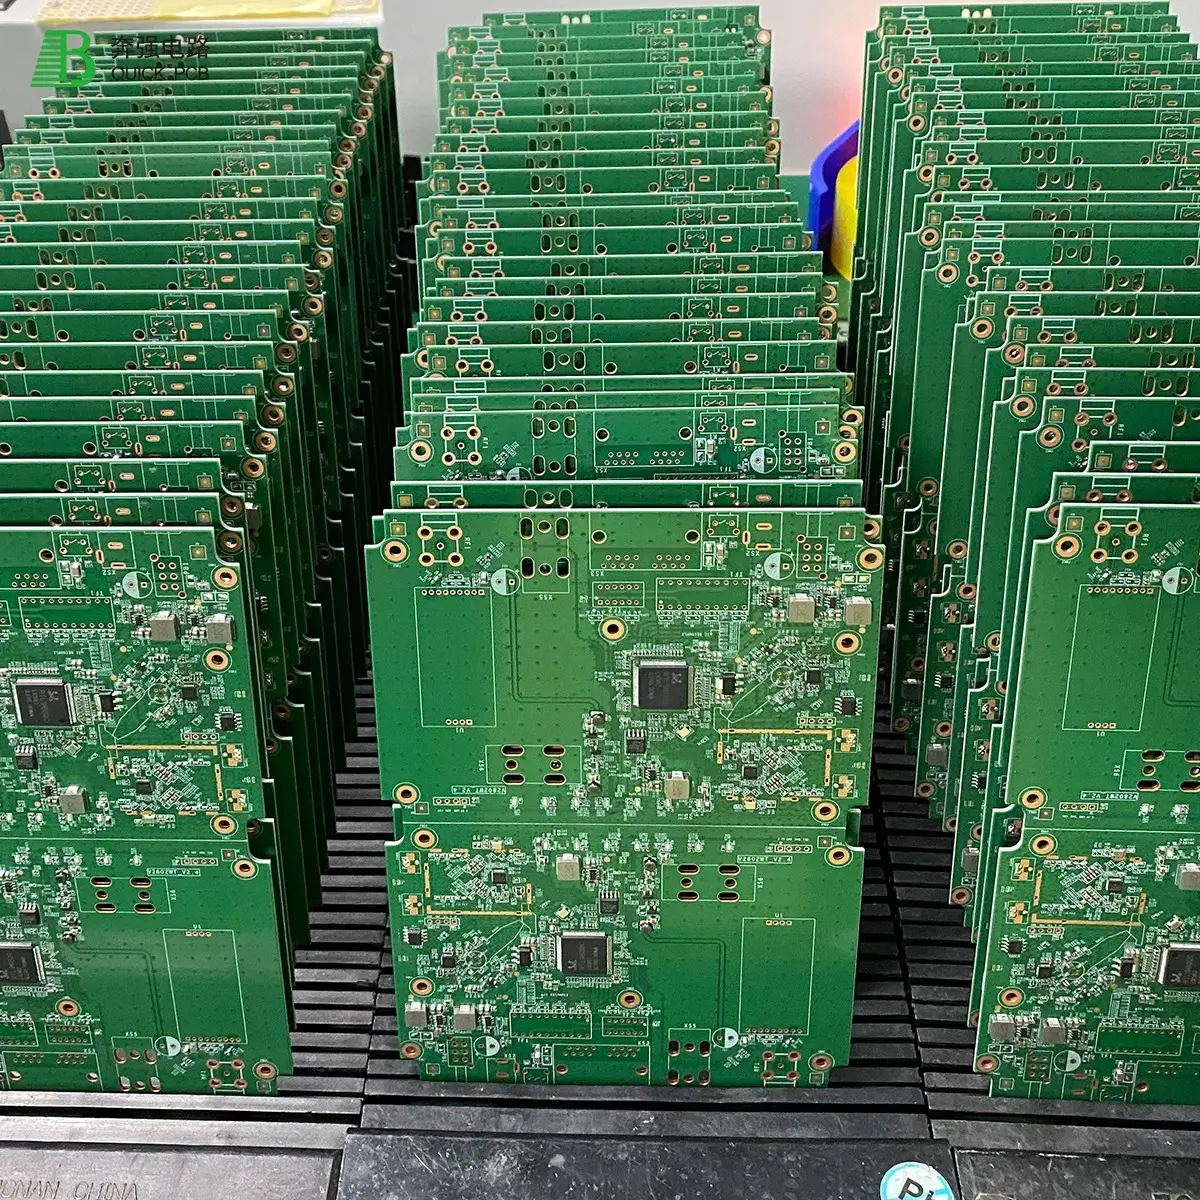 Personnalisation professionnelle de la conception de circuits imprimés OEM et ODM Electronics Fabricant de circuits imprimés multicouches PCB et PCBA personnalisés